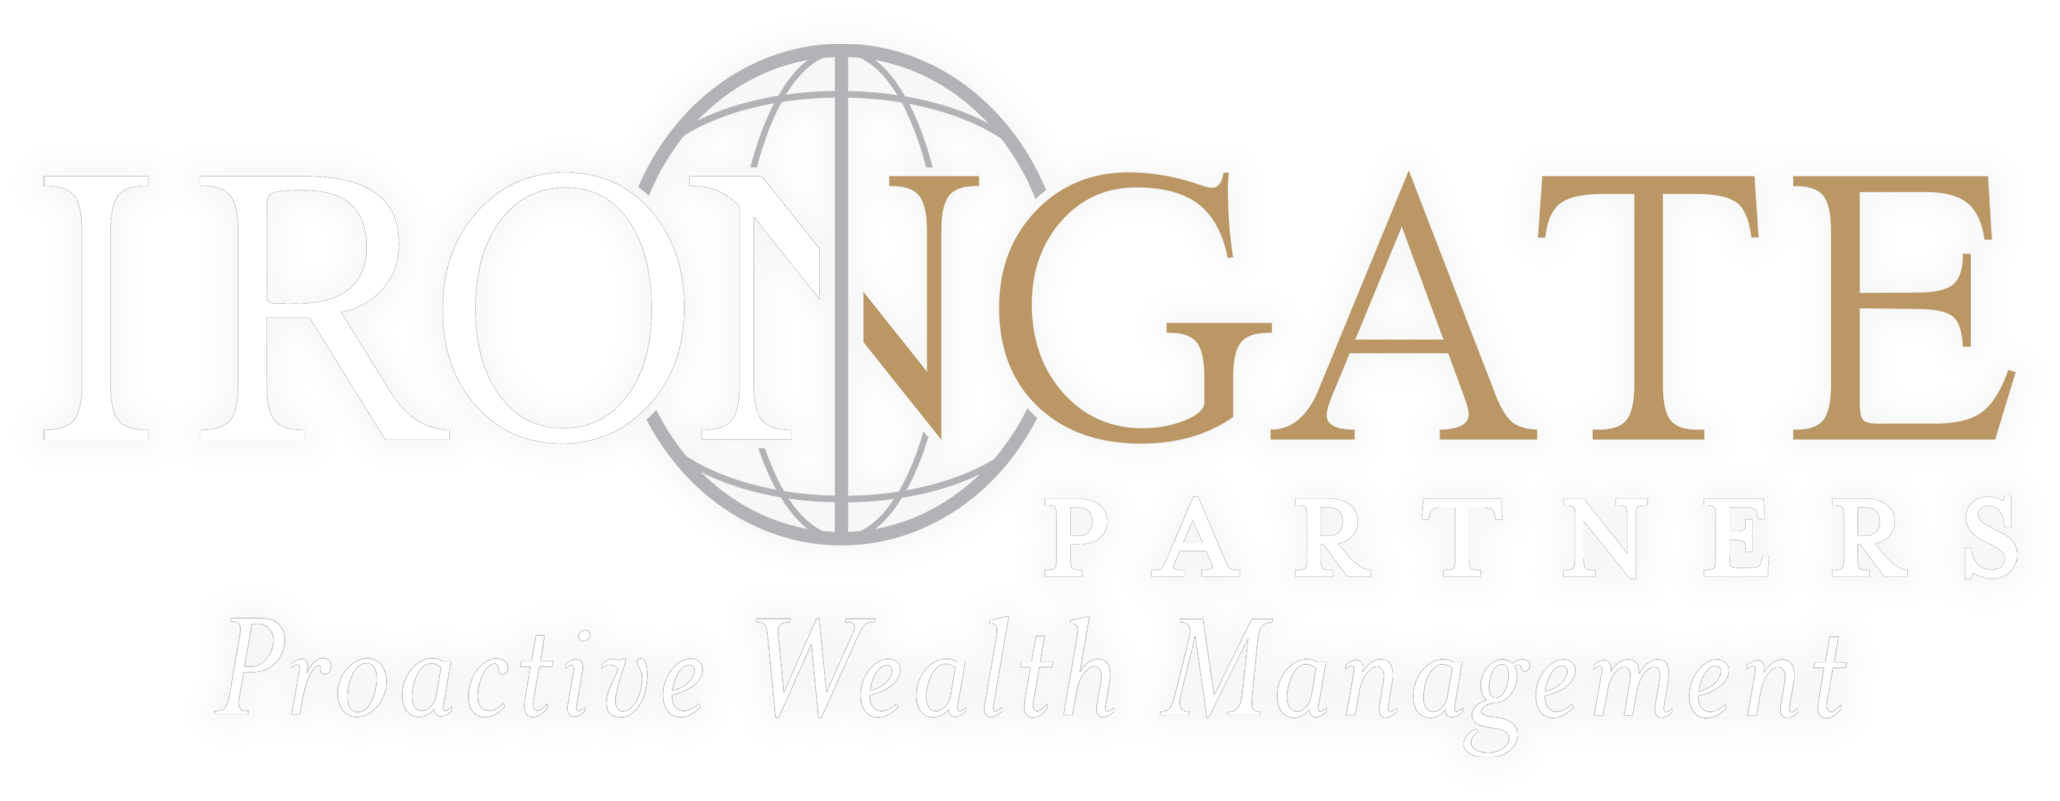 IronGate Partners Logo